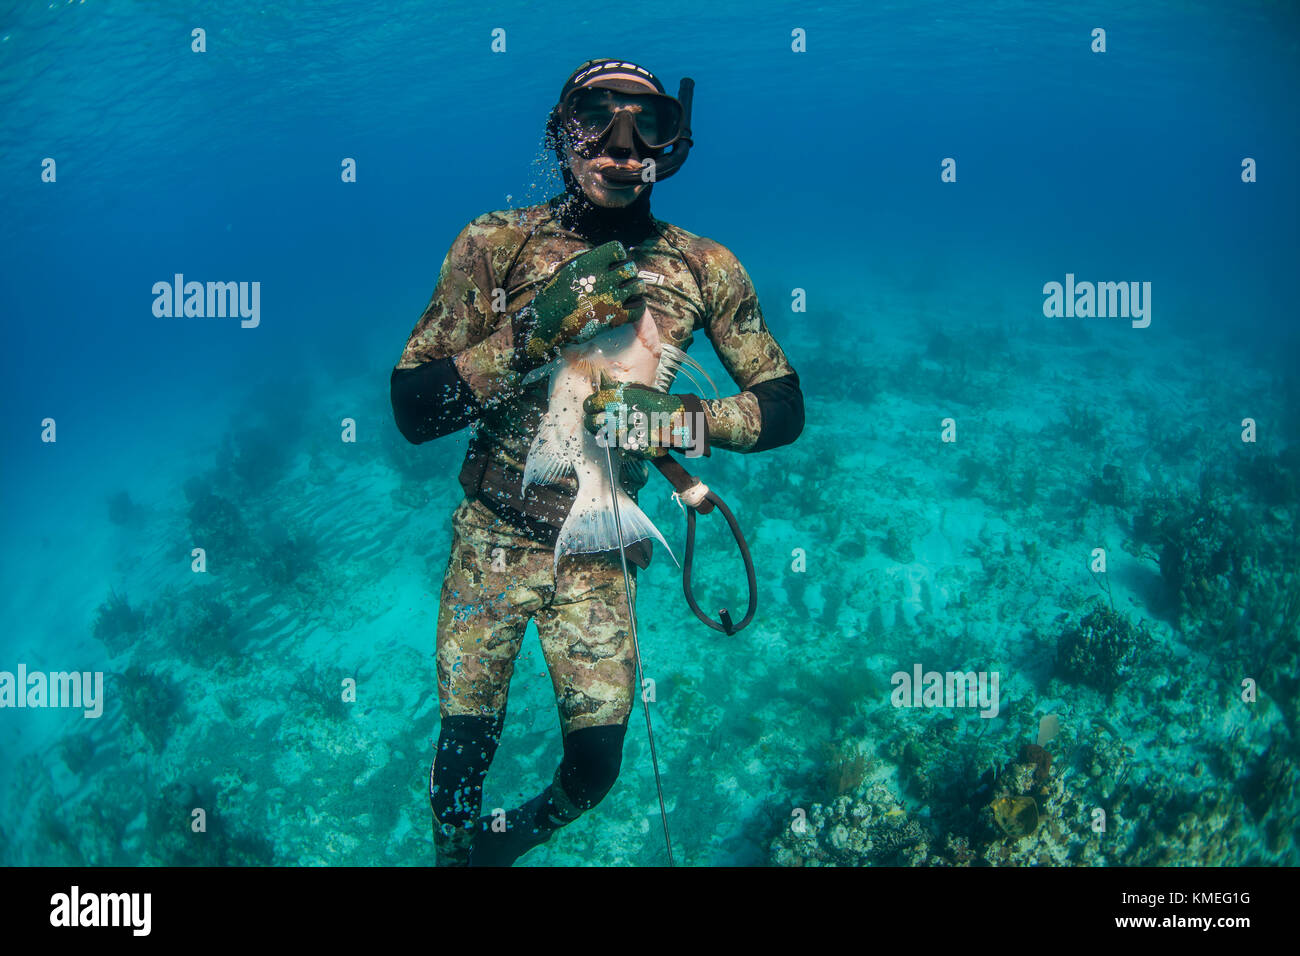 Vorderansicht des Tauchers, der gefangenen Hogfish unter Wasser hält, während Speerfischen, Clarence Town, Long Island, Bahamas Stockfoto